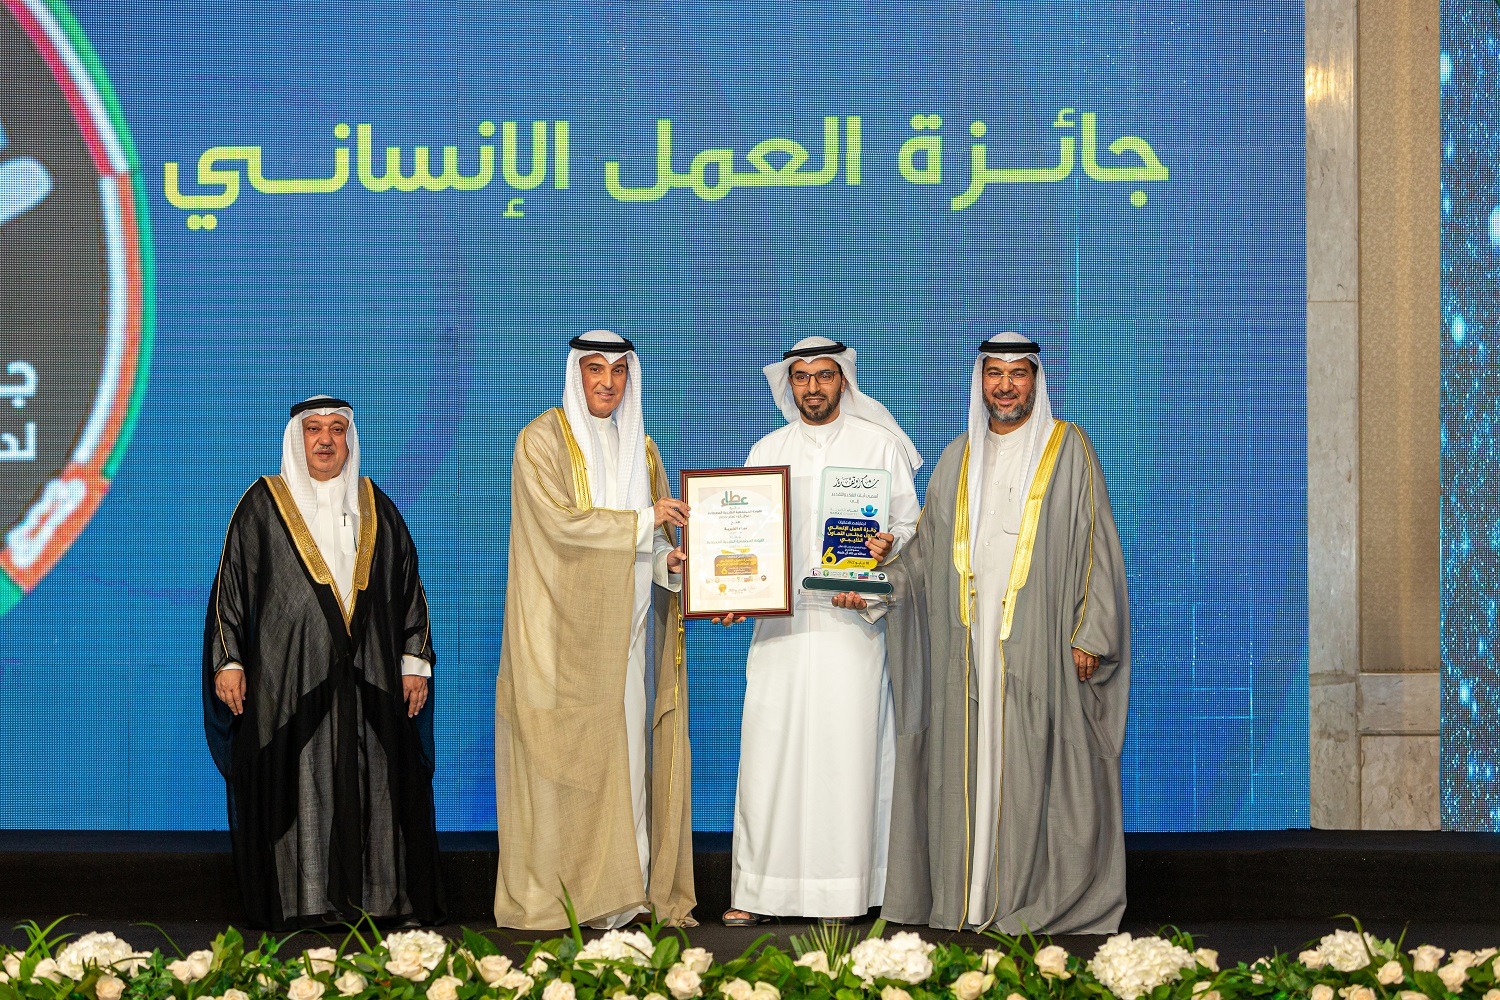 "نماء الخيرية" تحصل على جائزة القيادة المجتمعية الخليجية المعطاءة (عطاء) لعام 2022 